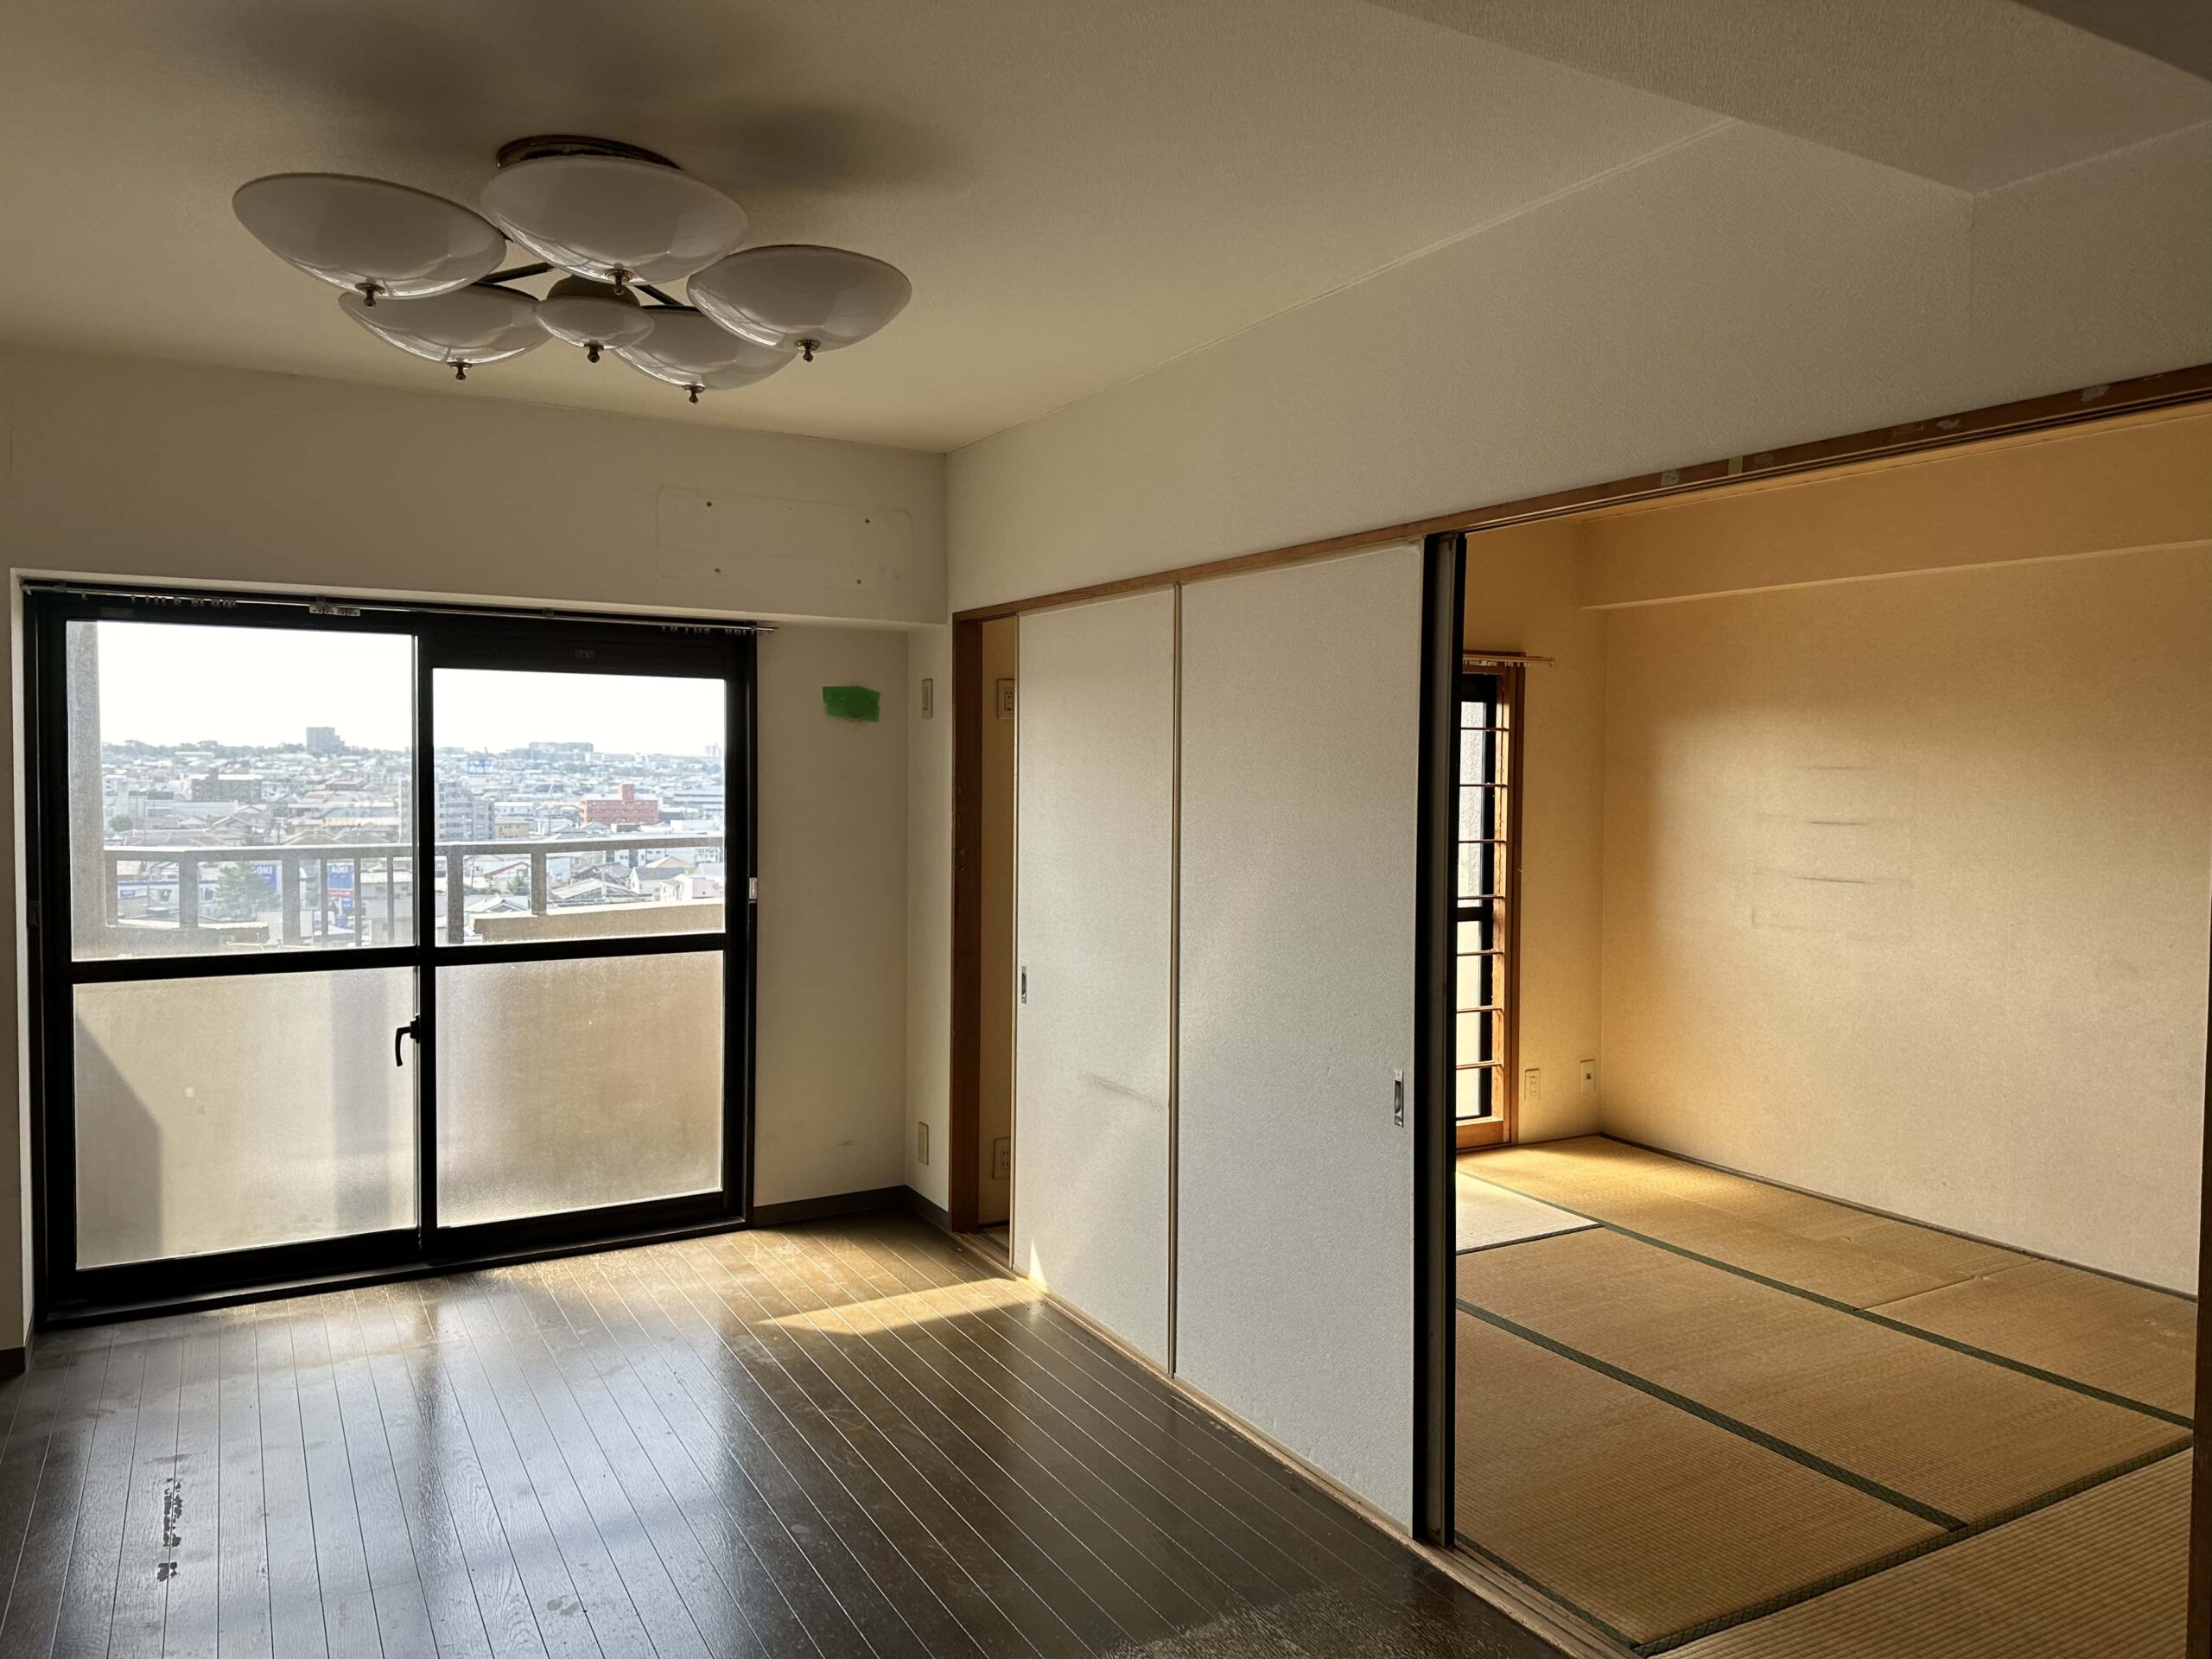 小さく細長いダイニングリビングの横に６畳の和室。一室として空間を繋げて広さを確保しつつ、このお部屋ならではの個性的な仕掛けを模索中です。